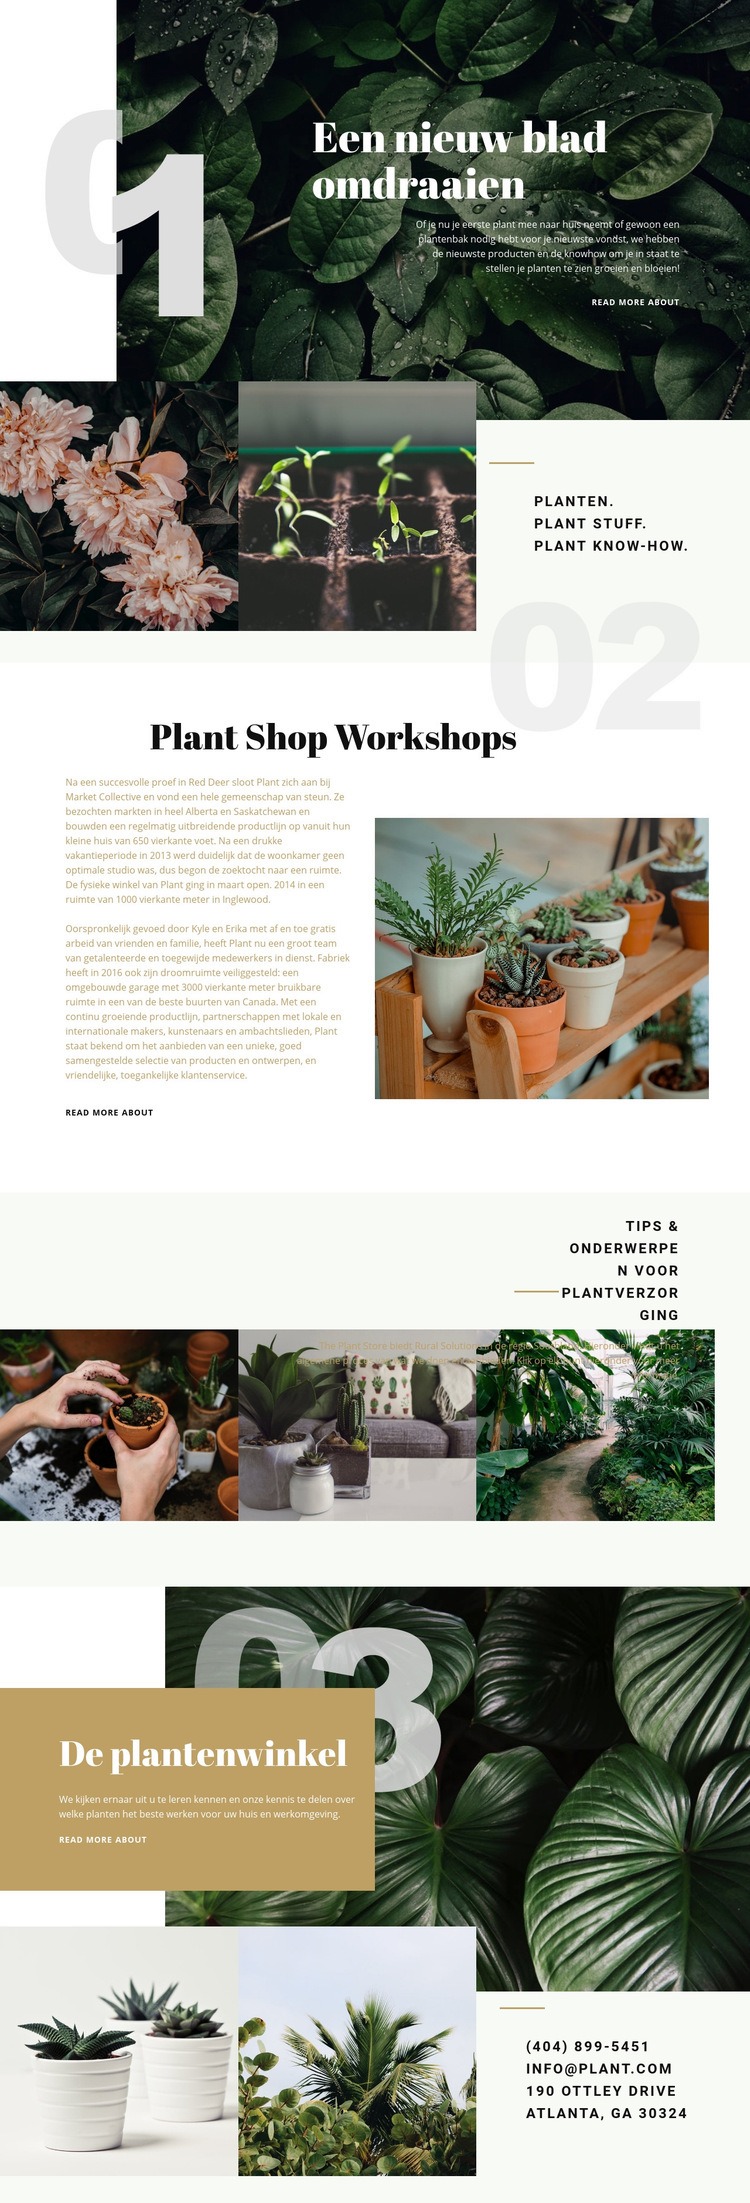 Plantenwinkel Website mockup